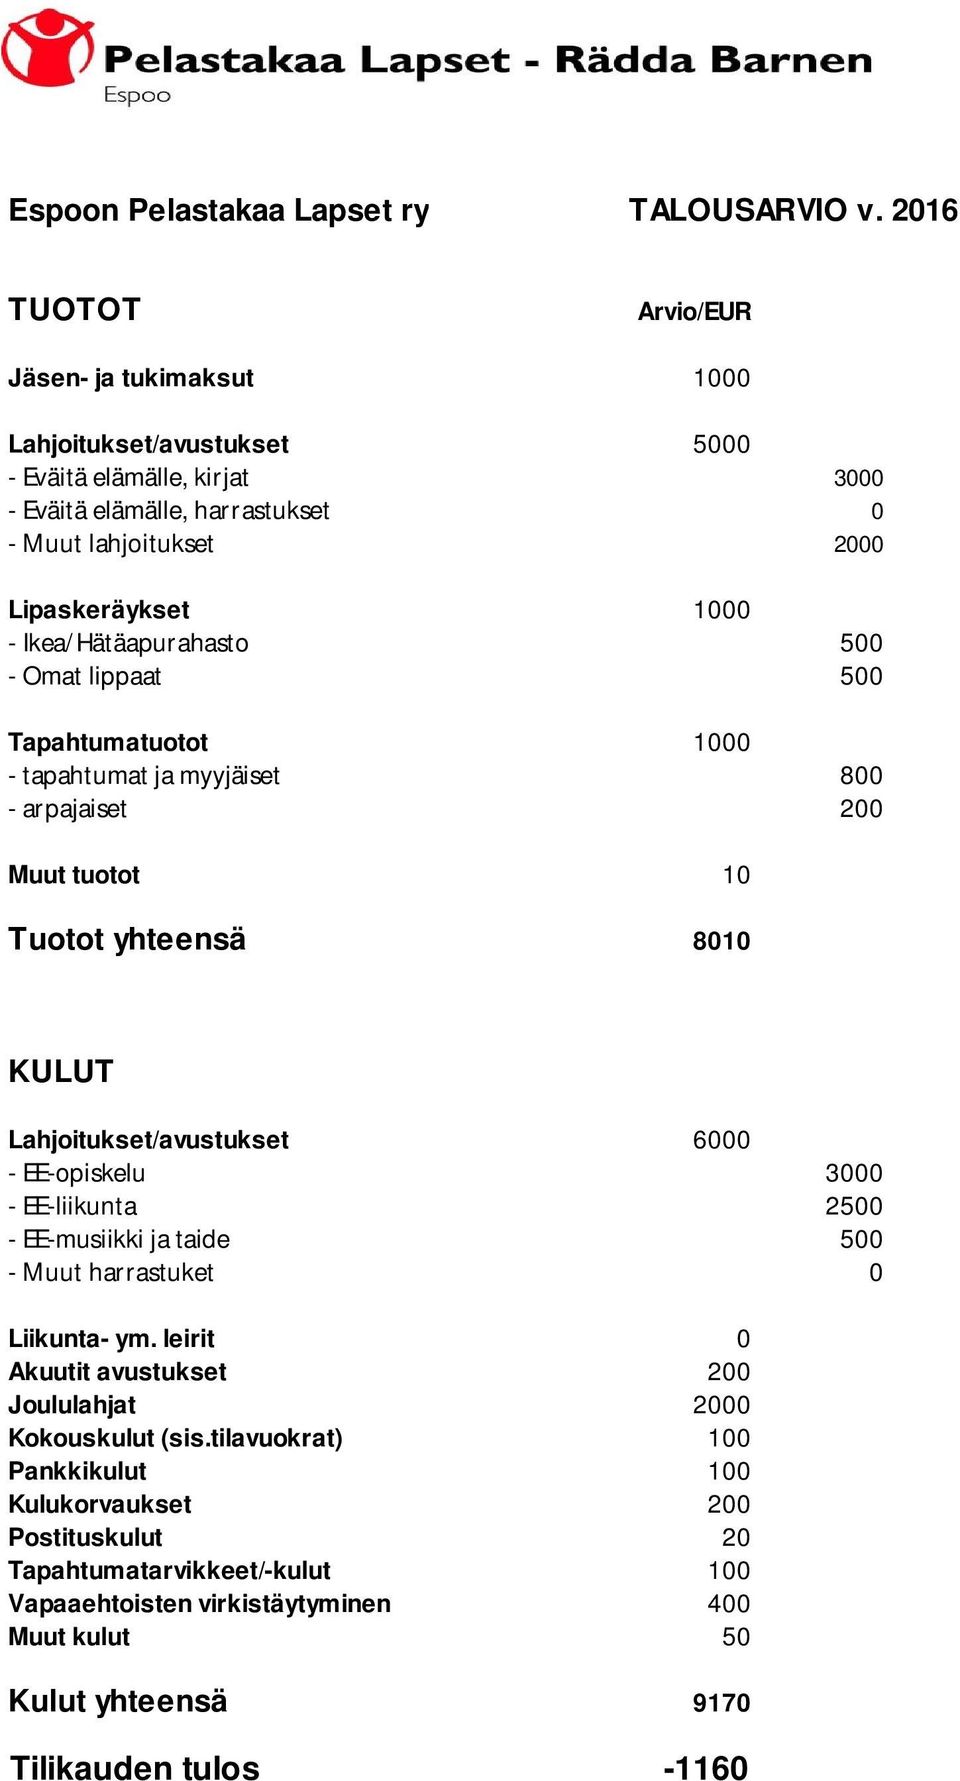 Ikea/Hätäapurahasto 500 - Omat lippaat 500 Tapahtumatuotot 1000 - tapahtumat ja myyjäiset 800 - arpajaiset 200 Muut tuotot 10 Tuotot yhteensä 8010 KULUT Lahjoitukset/avustukset 6000 -